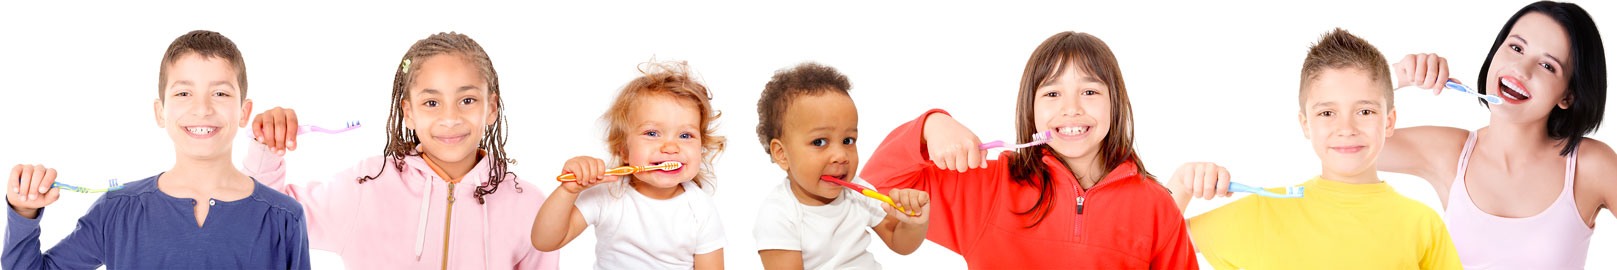 odontopediatria cuidando da saude oral de bebes, crianças e adolescentes